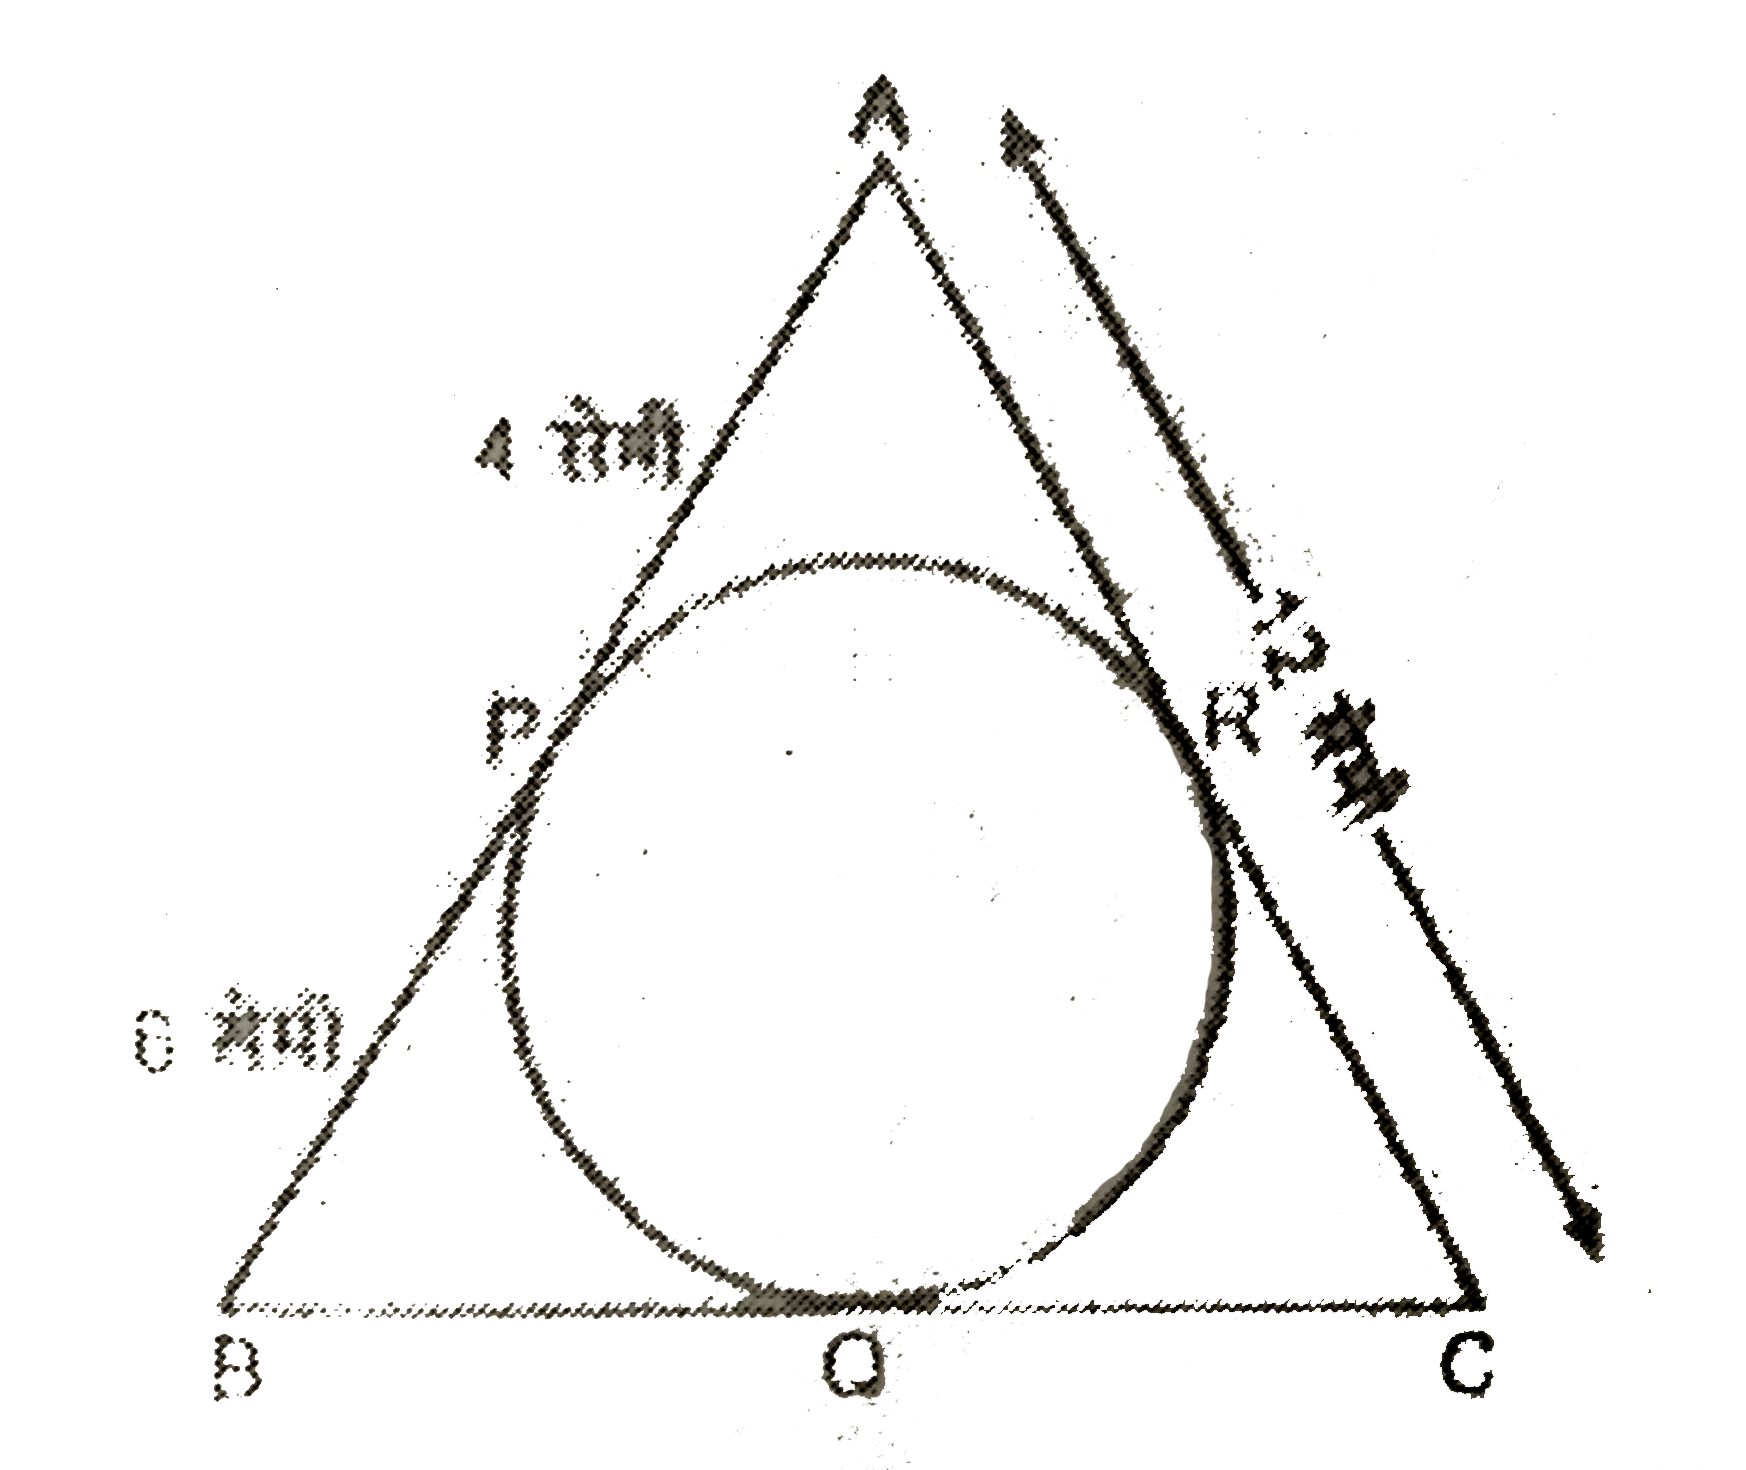 दिये गये चित्र में, त्रिभुज ABC के अंन्तर्गत एक वृत्त खींची गया है तथा P, Q, R स्पर्श बिन्दु है। यदि PA=4 सेमी PB=6 सेमी तथा AC=12 सेमी हो, तो BC की माप ज्ञात कीजिए।